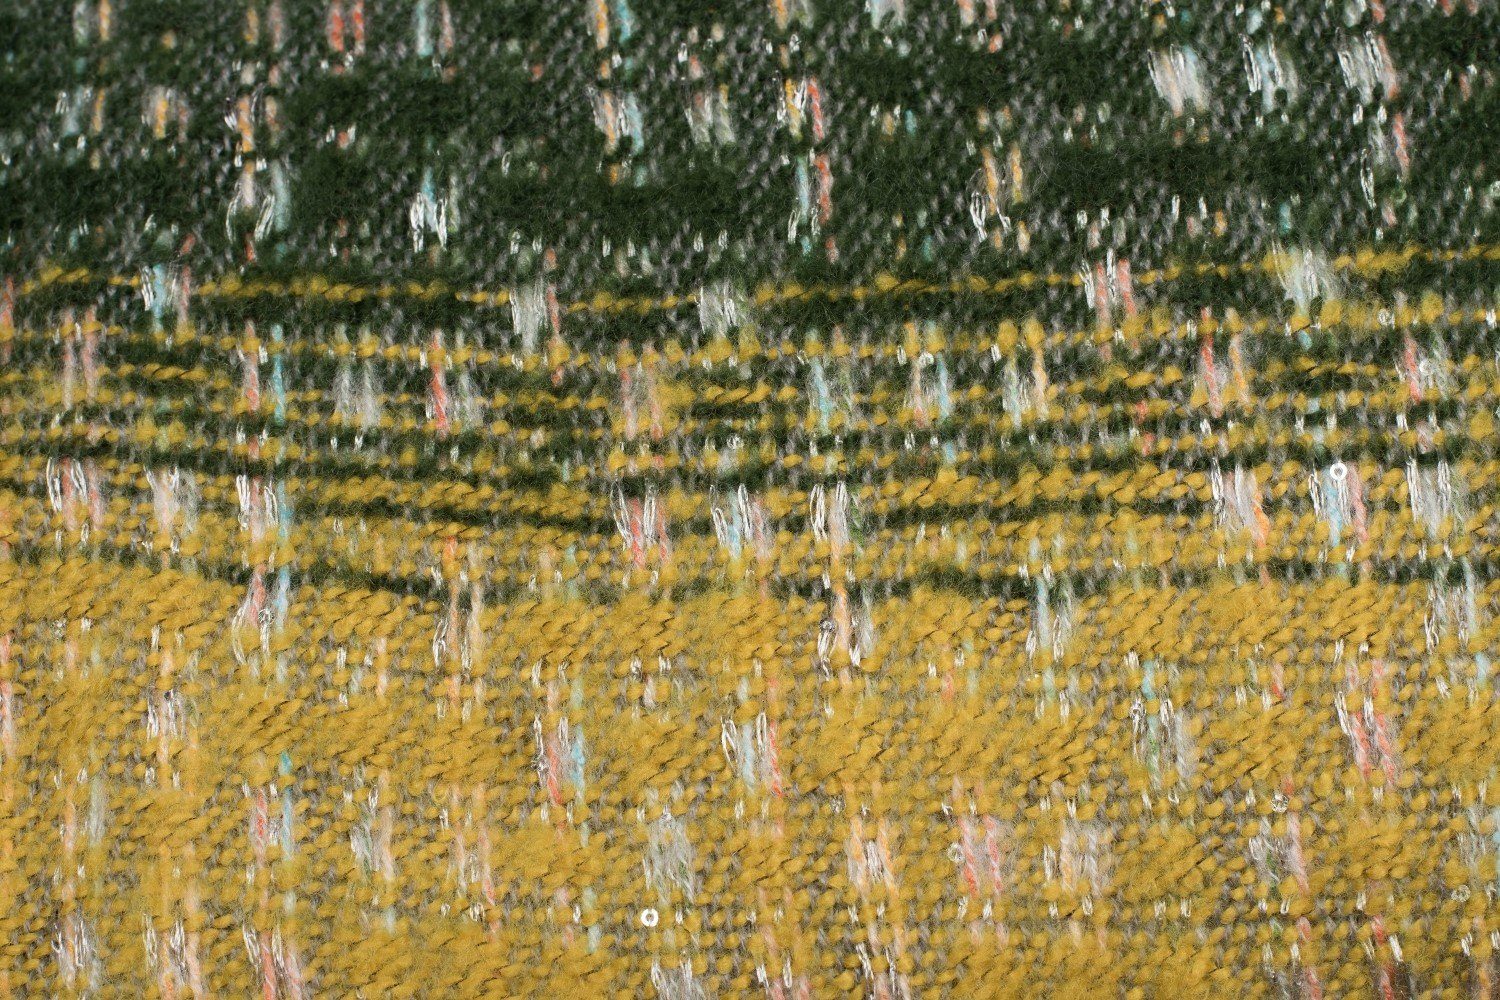 Schal Streifen Pailletten und Modeschal, Gelb-Dunkelgrün-Hellgrau (1-St), styleBREAKER Muster mit Web Warmer